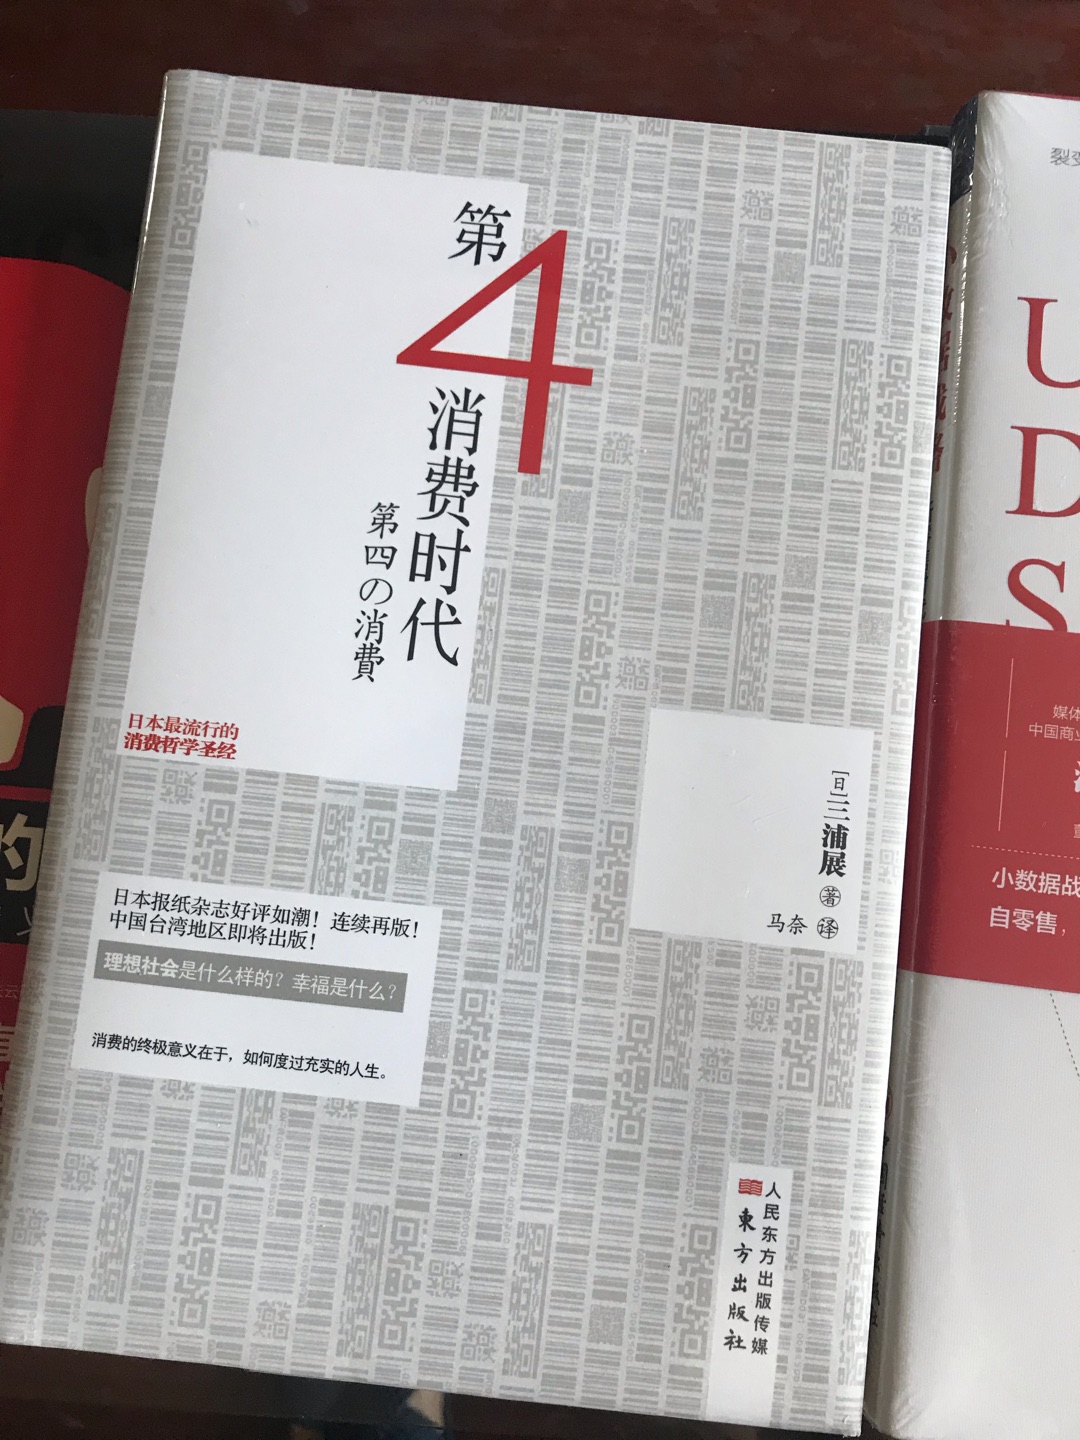 日本作者的分析还是很有意思的，精准。配送极速，买书首选。推荐的目录也很人性化！